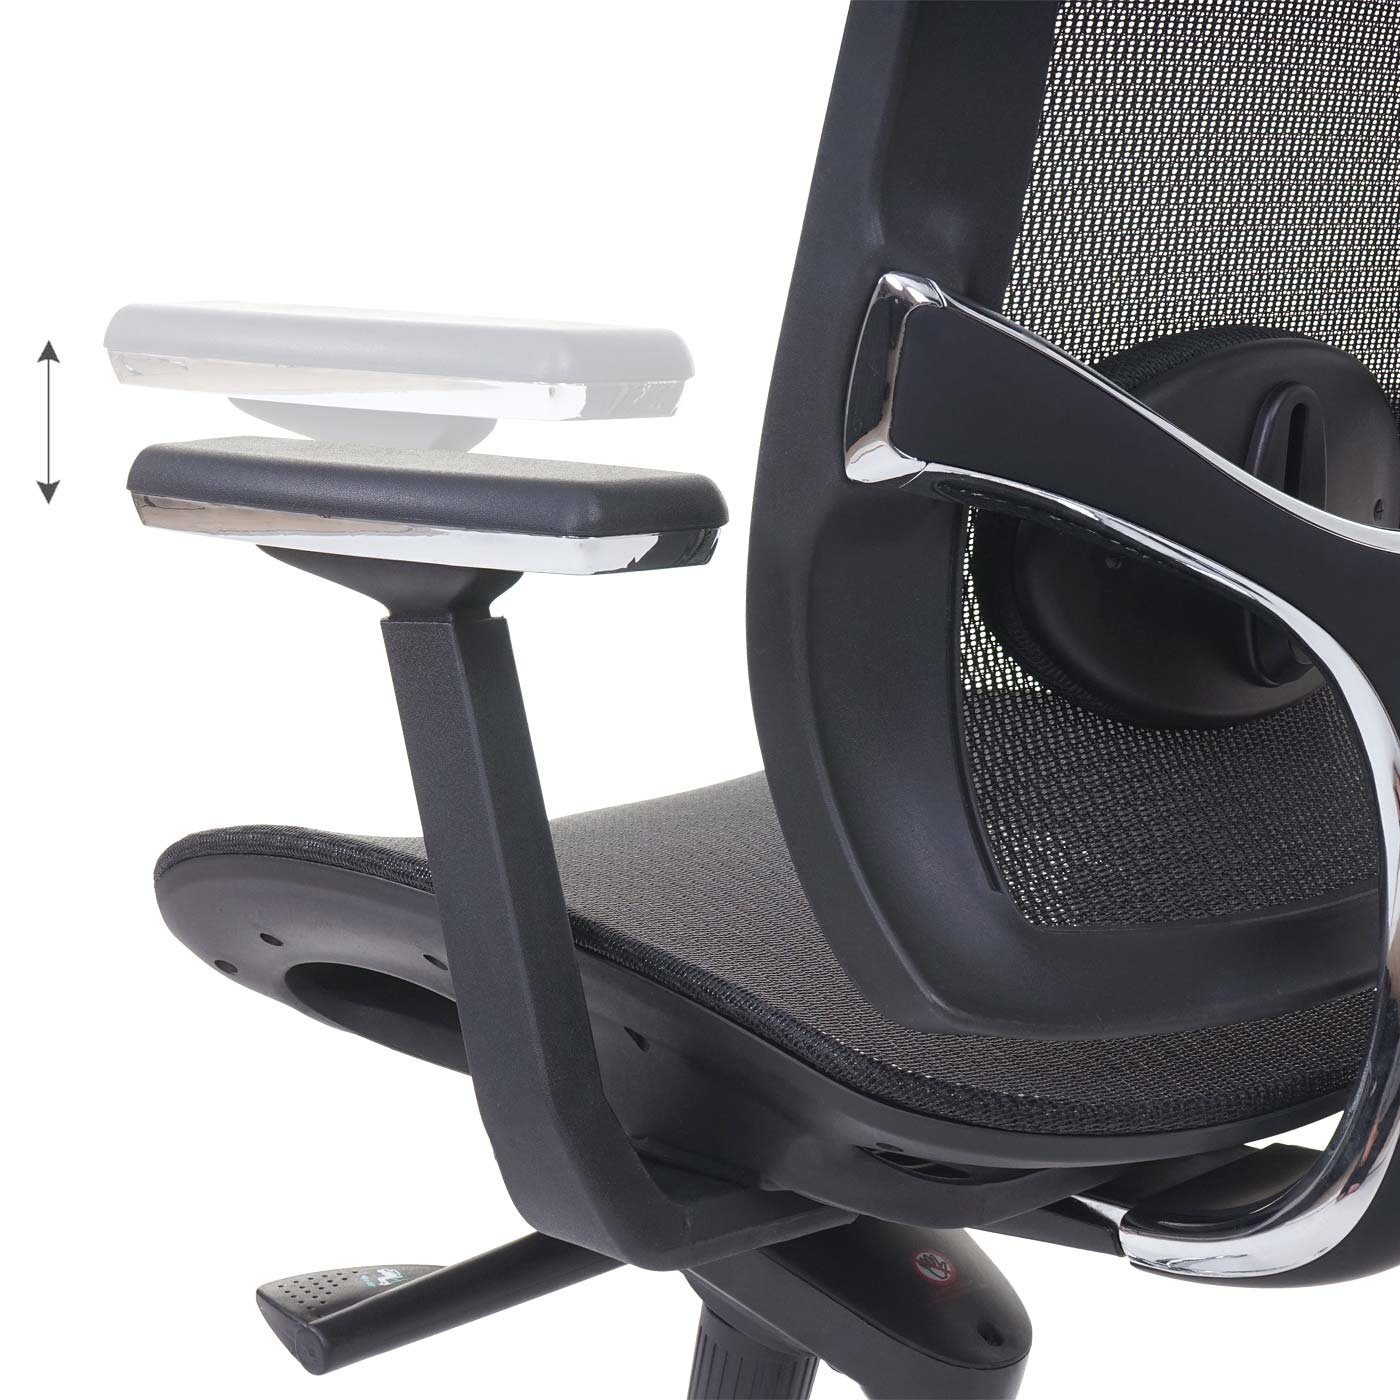 MCW Schreibtischstuhl MCW-A55, Rücken, Kopfstütze Höhenverstellbare Luftzirkulation am und Sitzfläche